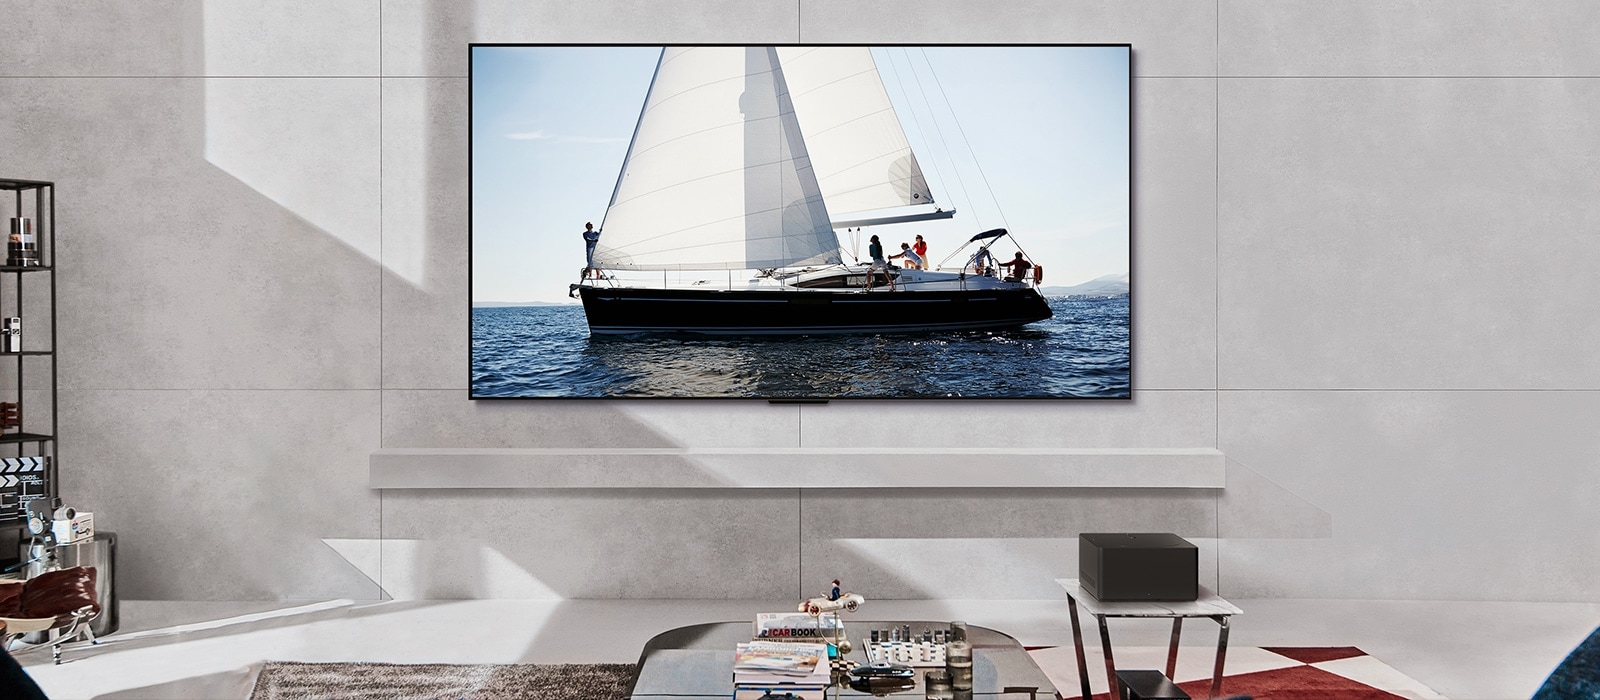 LG OLED evo M4 ir LG Soundbar modernioje gyvenamojoje patalpoje dienos metu. Laivo vandenyne vaizdas ekrane rodomas idealiu ryškumo lygiu.